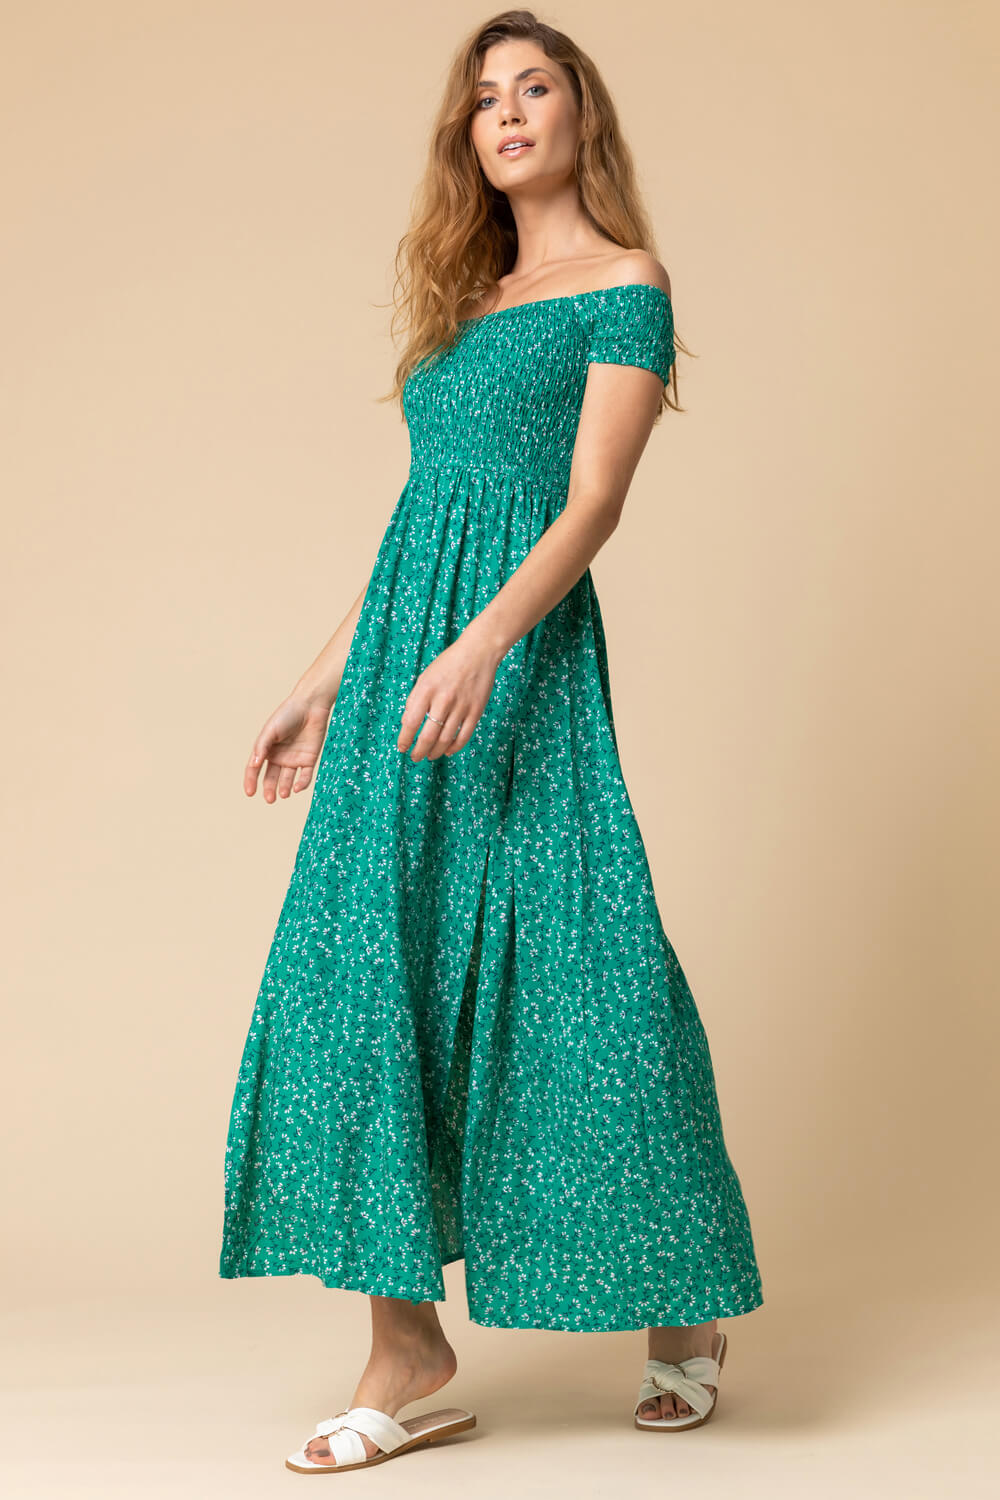 Green Shirred Ditsy Floral Print Bardot Dress, Image 3 of 4